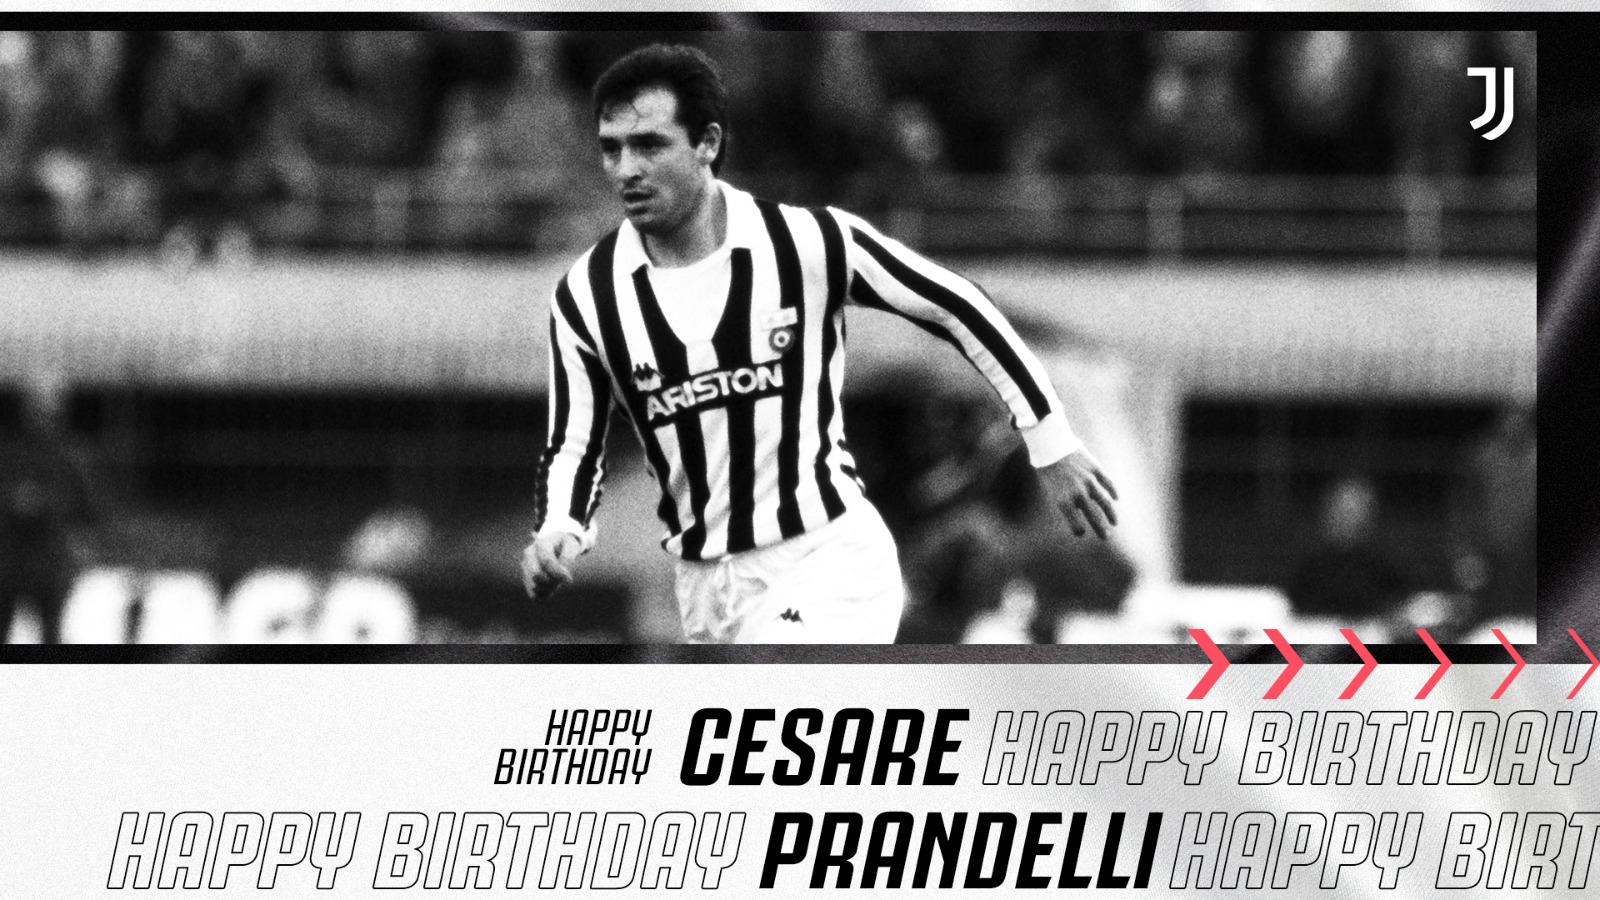 Happy birthday today to Cesare Prandelli!      